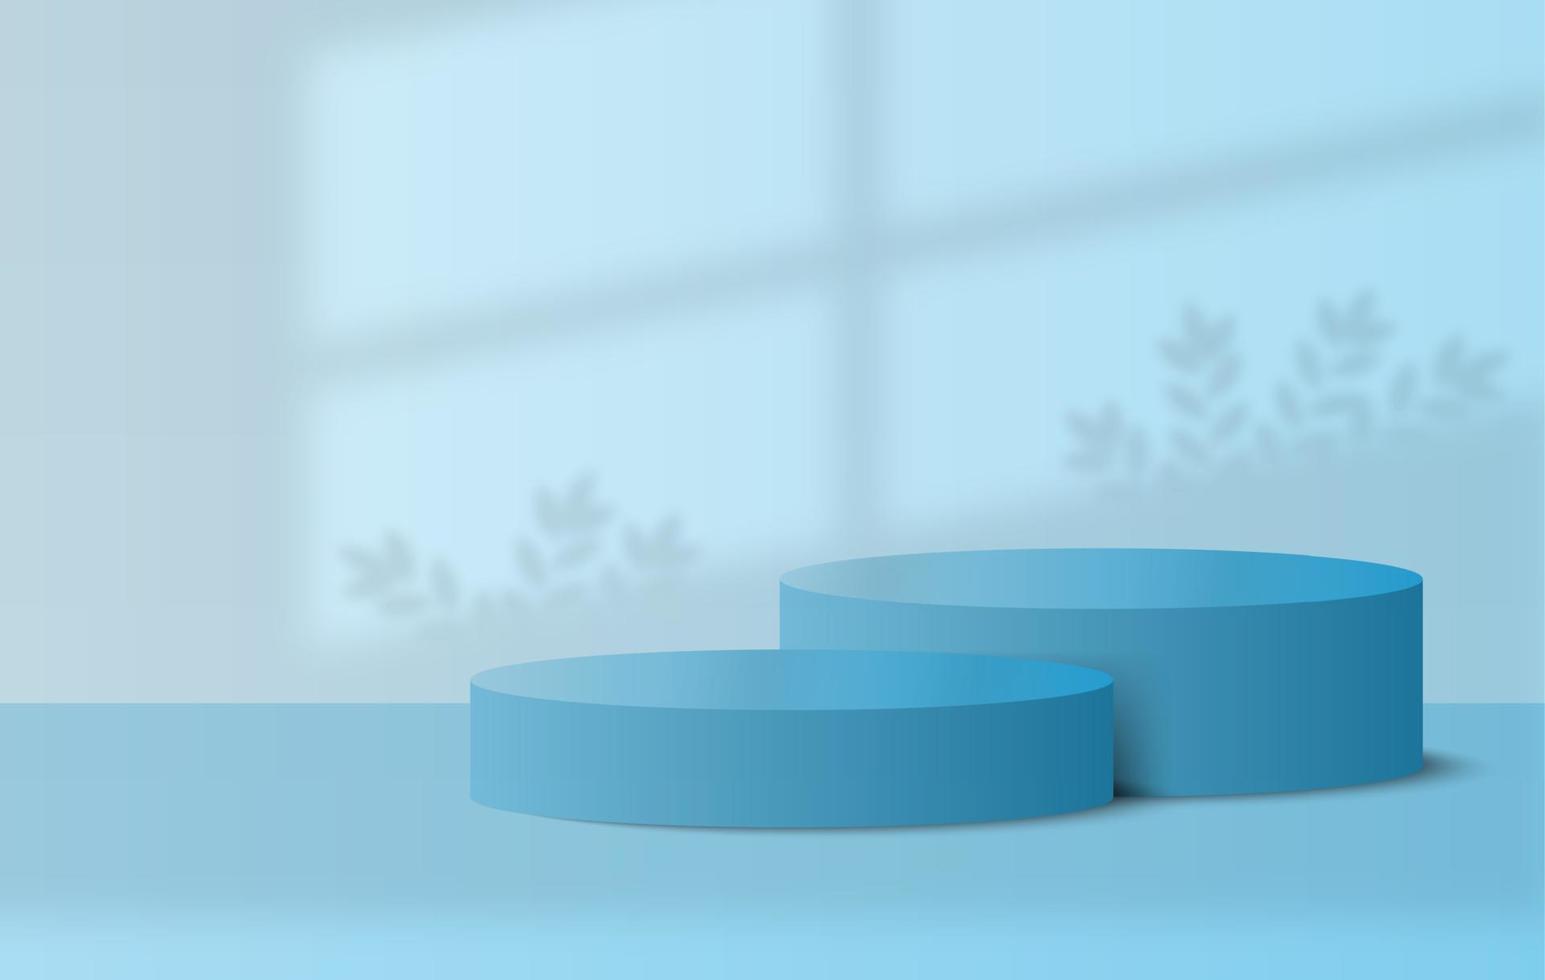 pódio com cena de parede mínima azul pastel, produtos 3d exibem cena de pódio, ilustração vetorial vetor